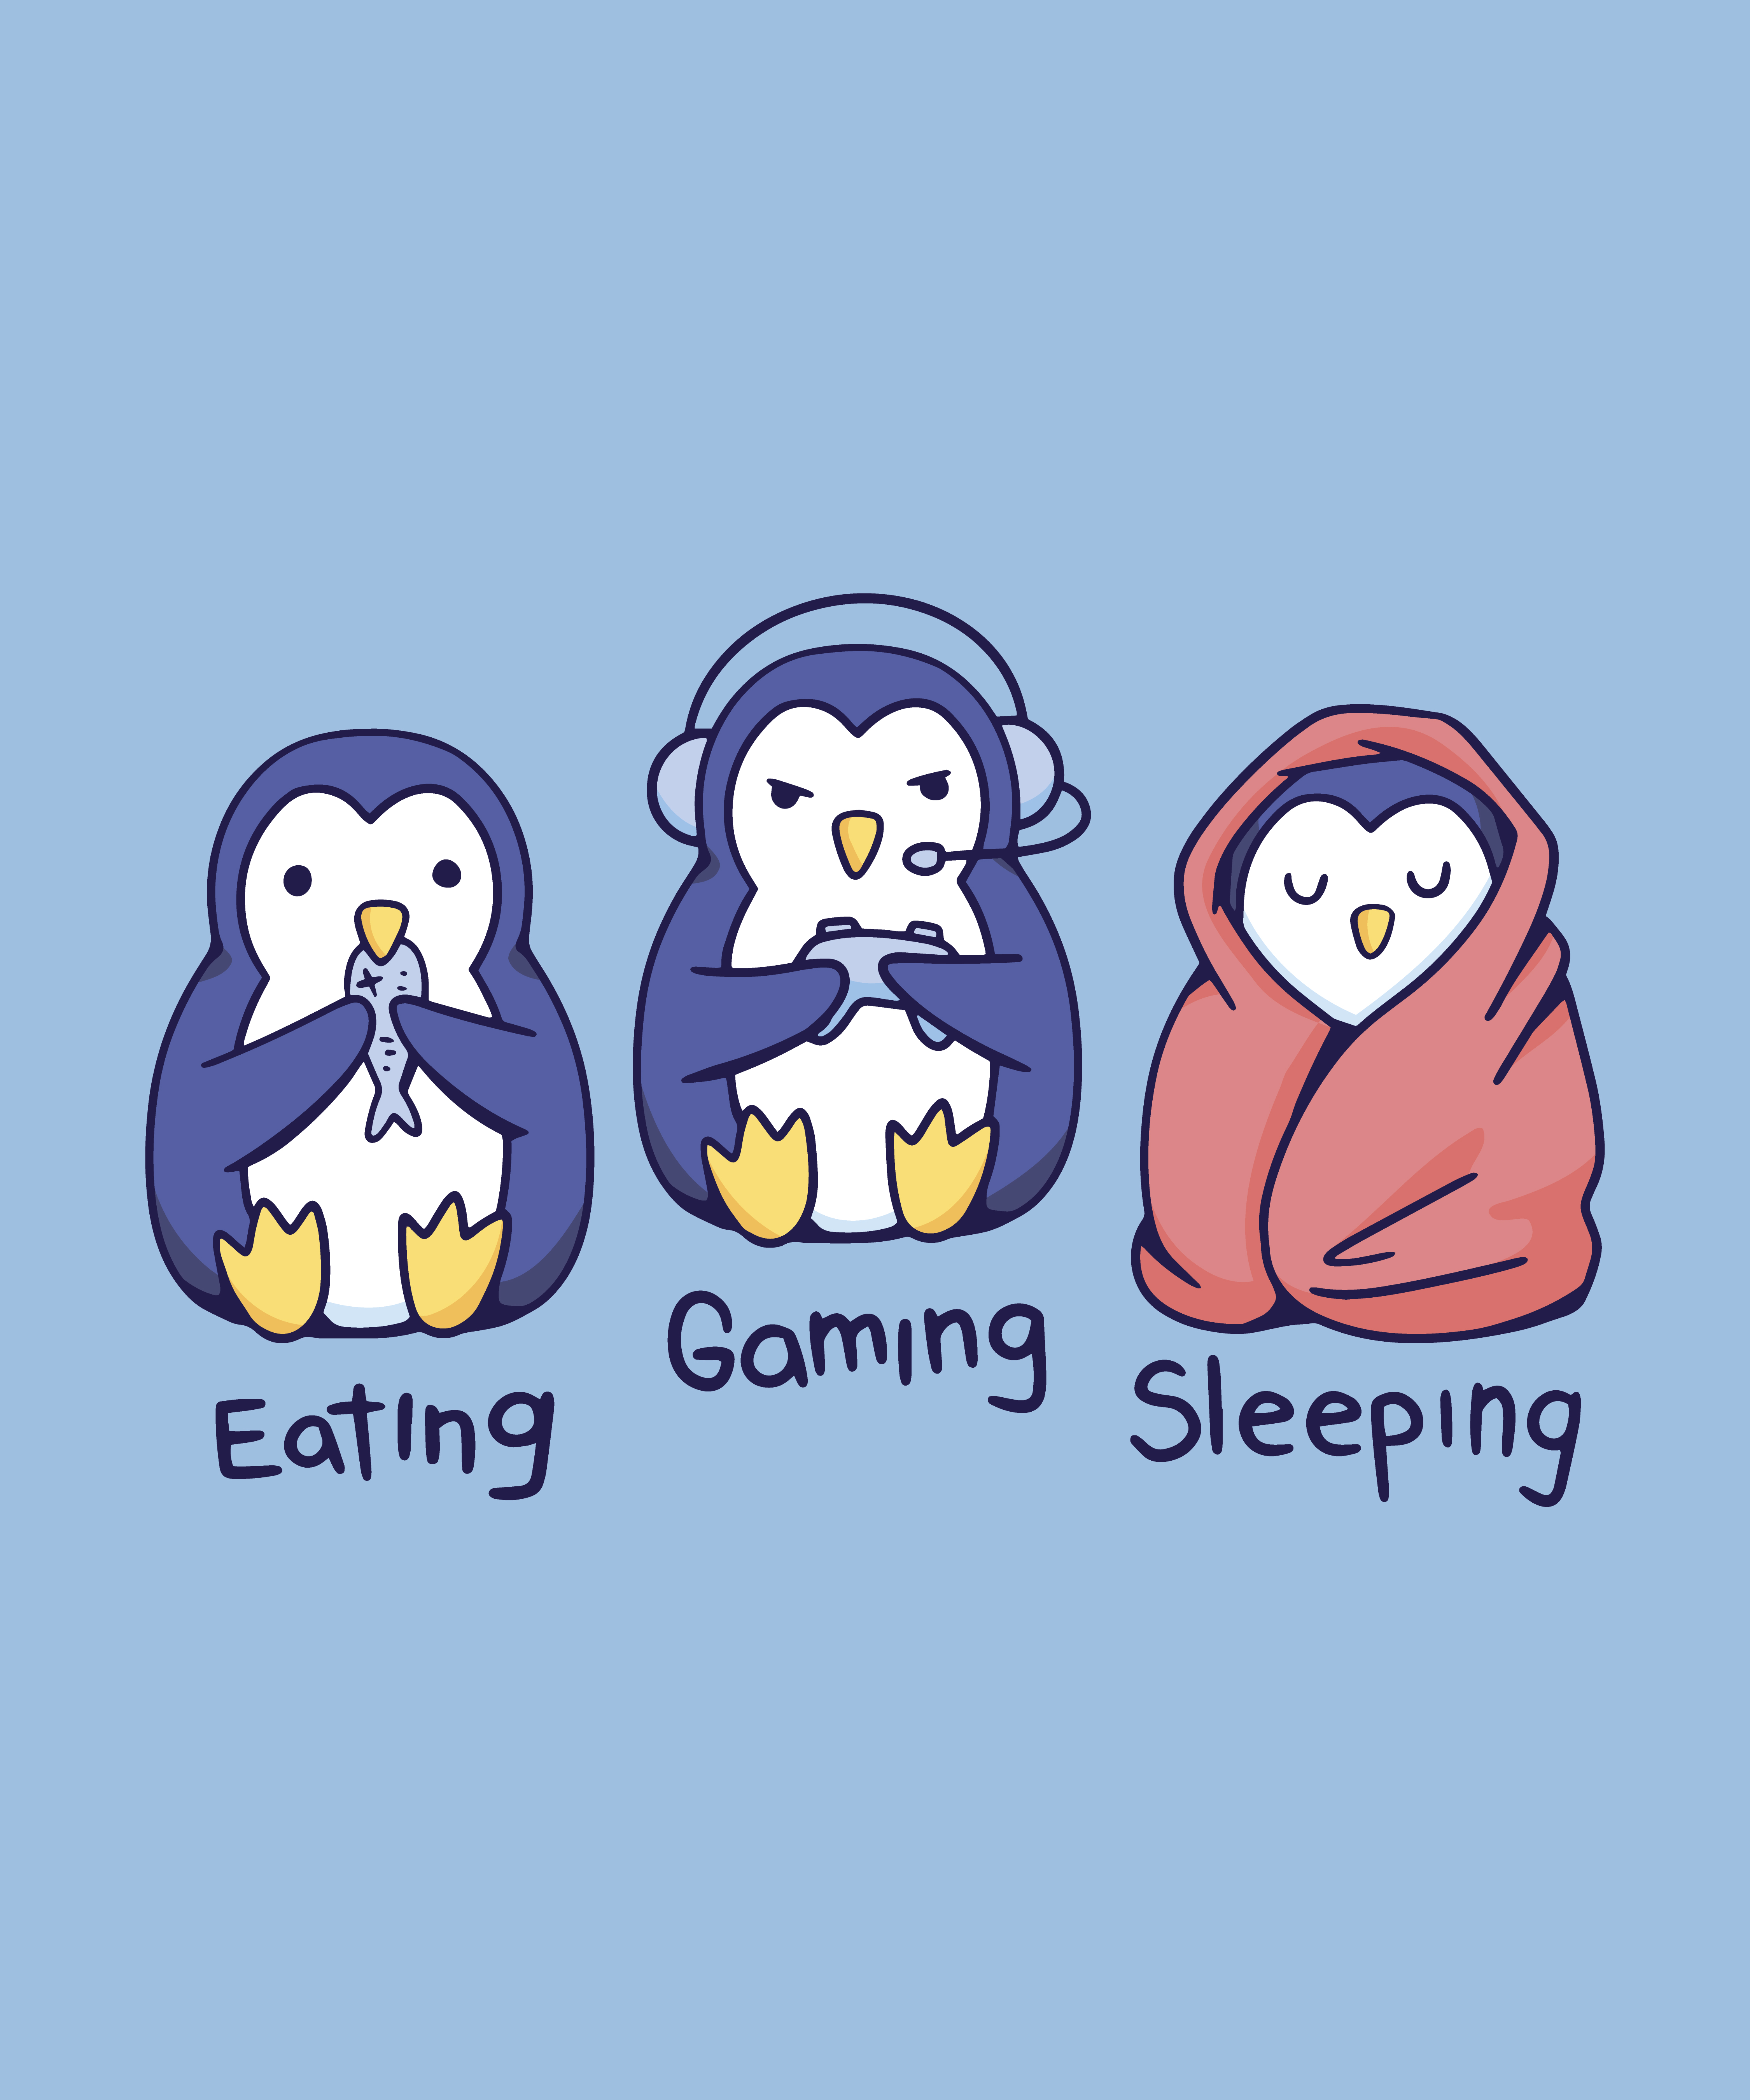 Gaming penguins poster design